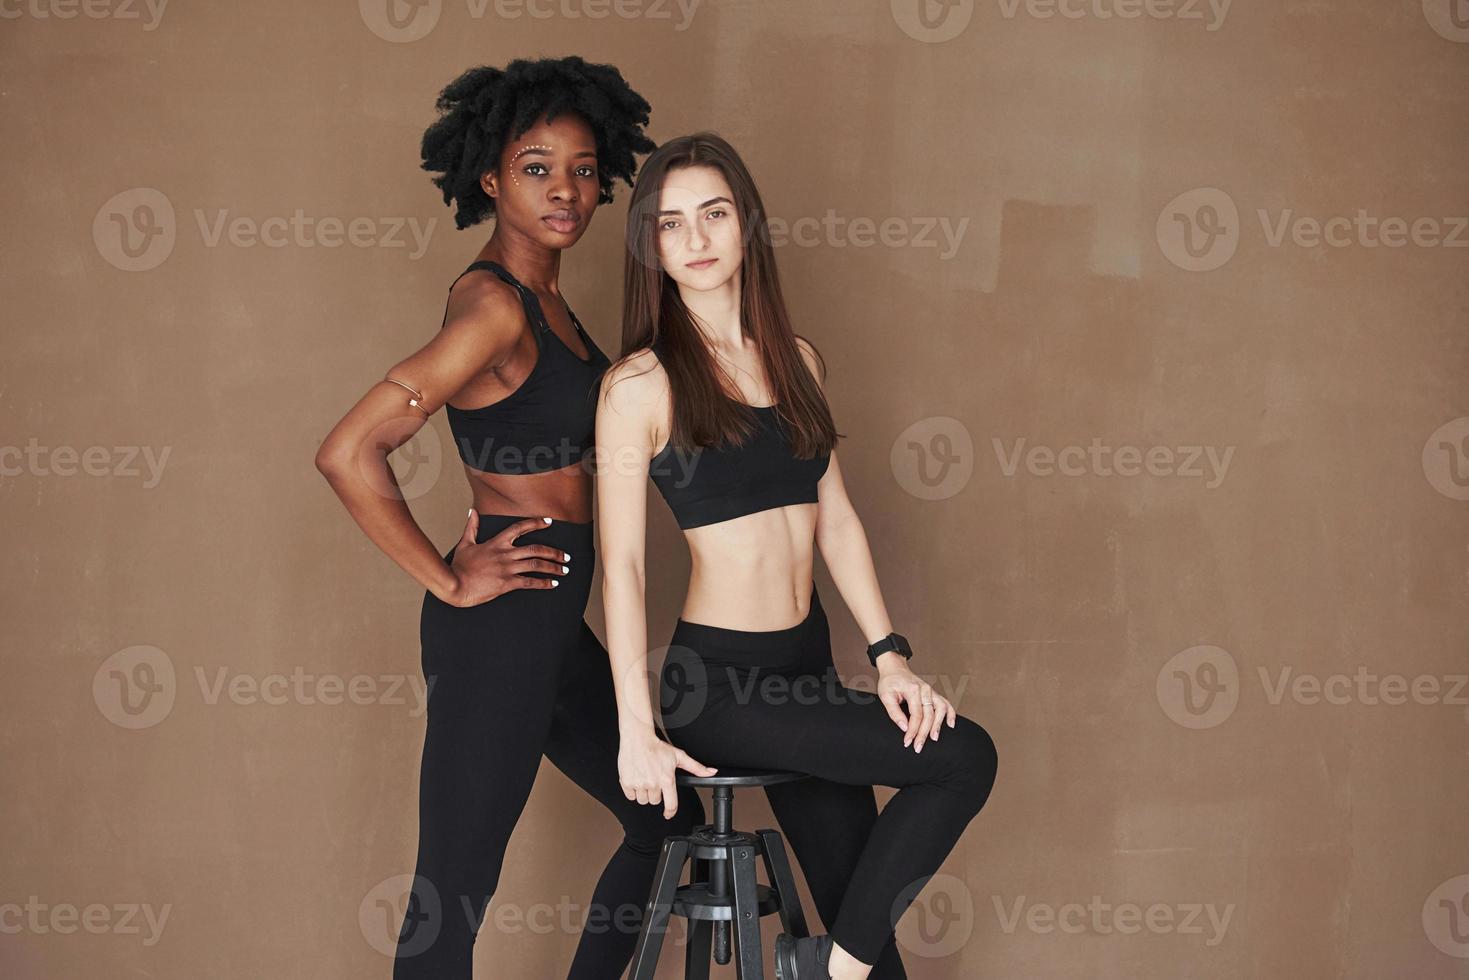 sur la chaise noire. deux amies multiethniques se tiennent dans le studio avec un fond marron photo